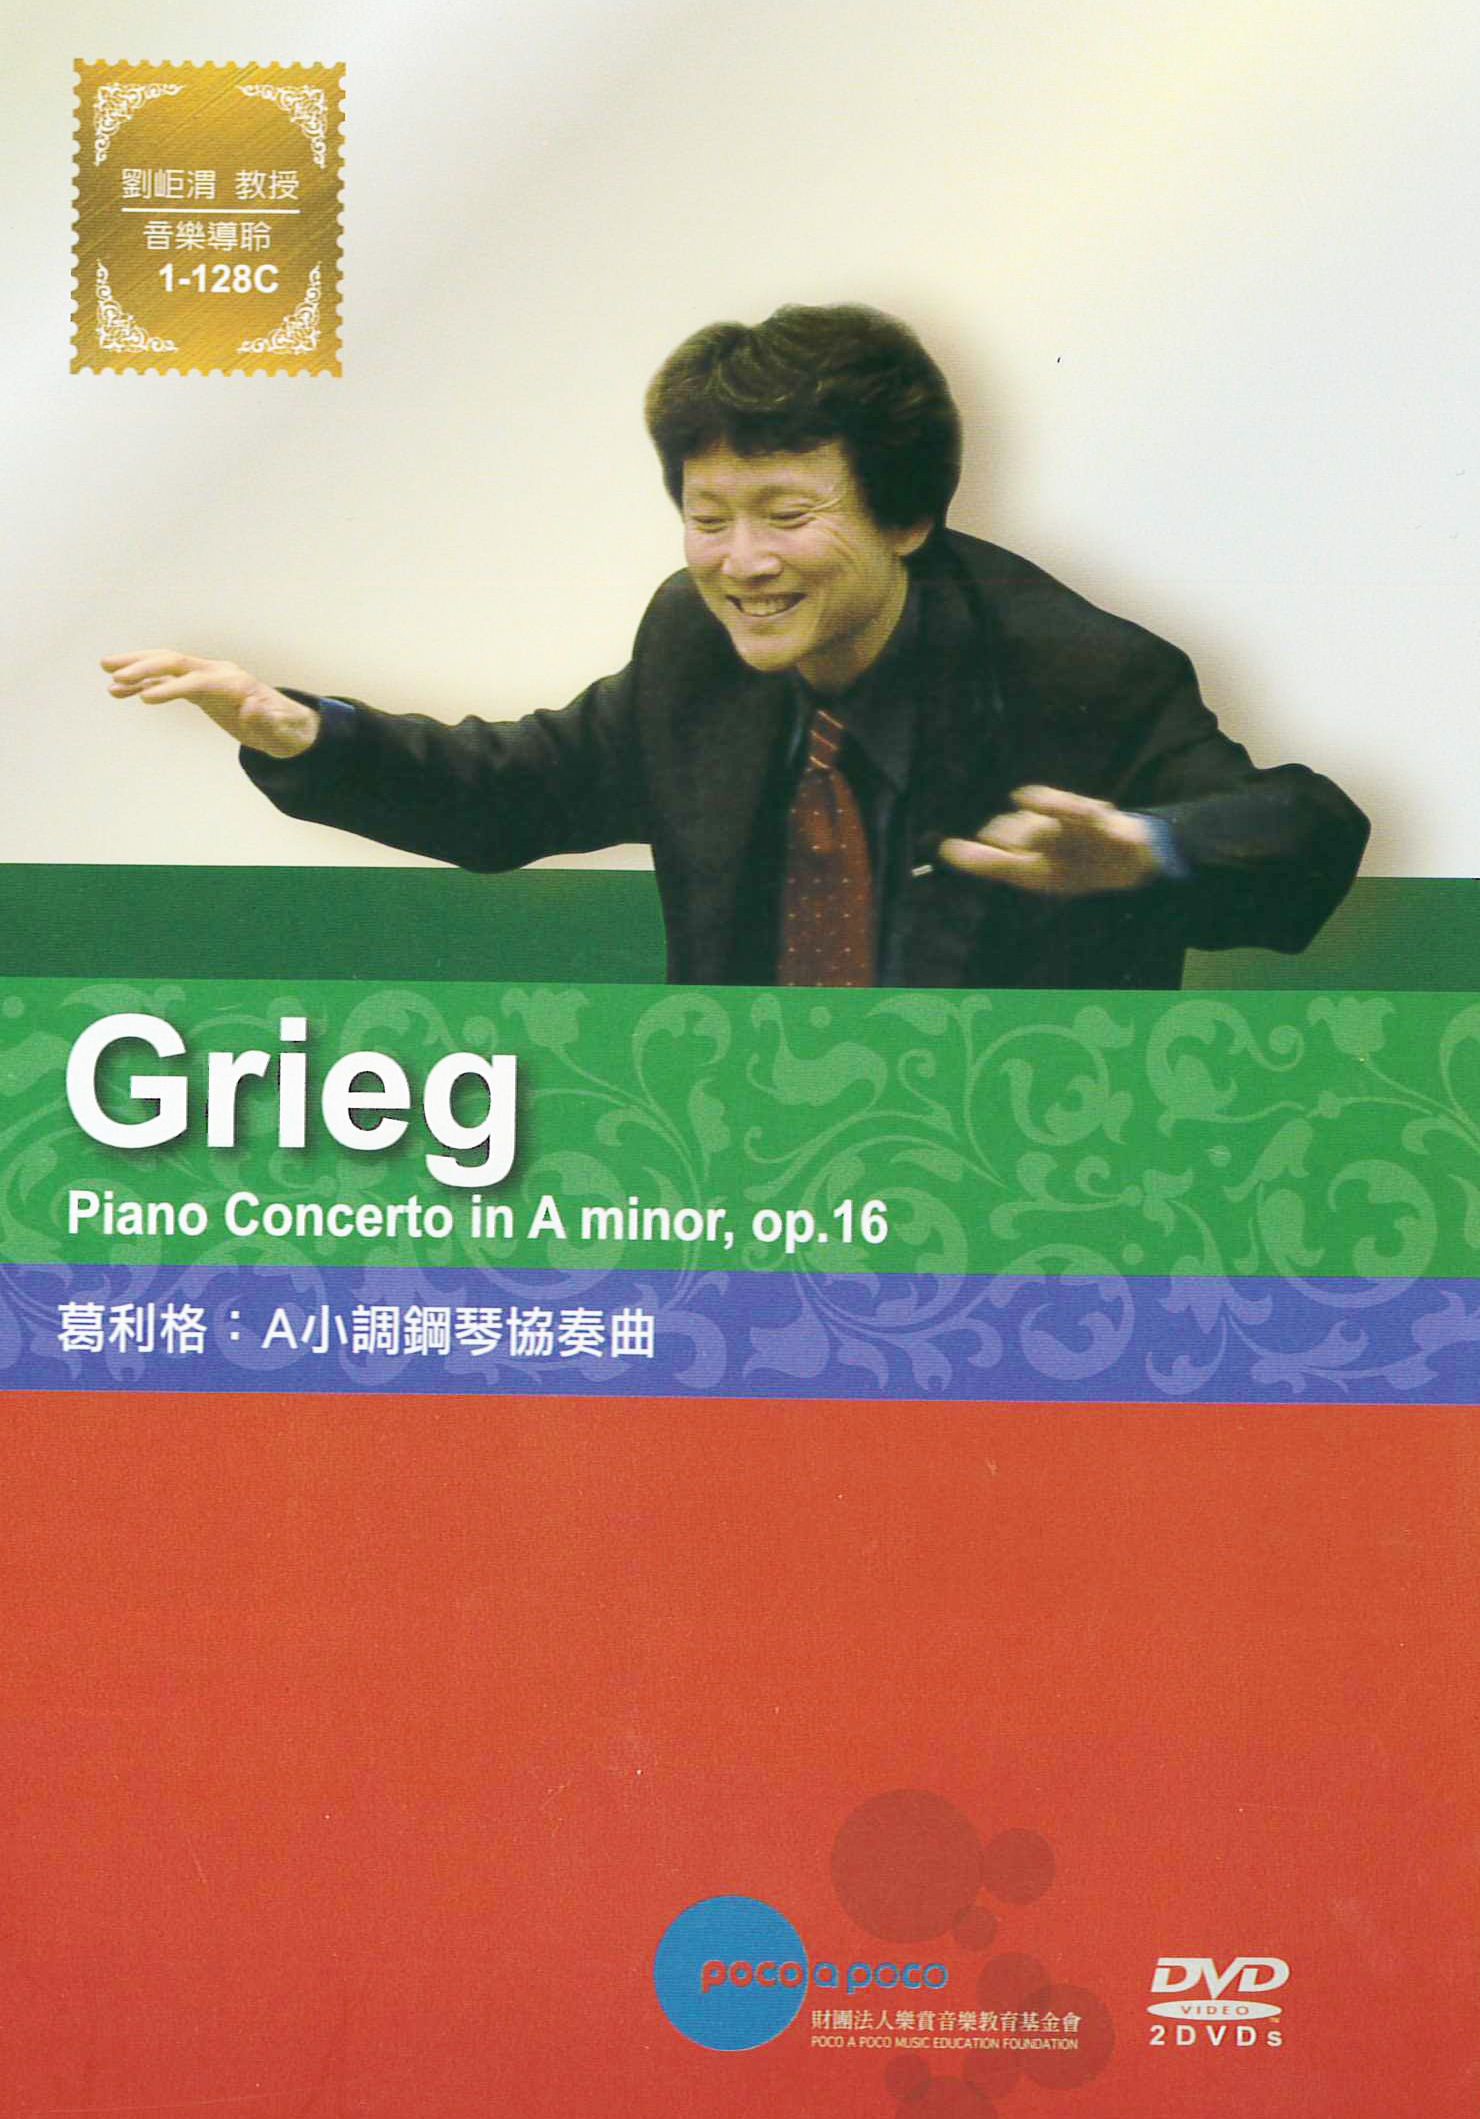 葛利格:A小調鋼琴協奏曲[普遍級:音樂] : Grieg:Piano Concerton in A minor, op.16